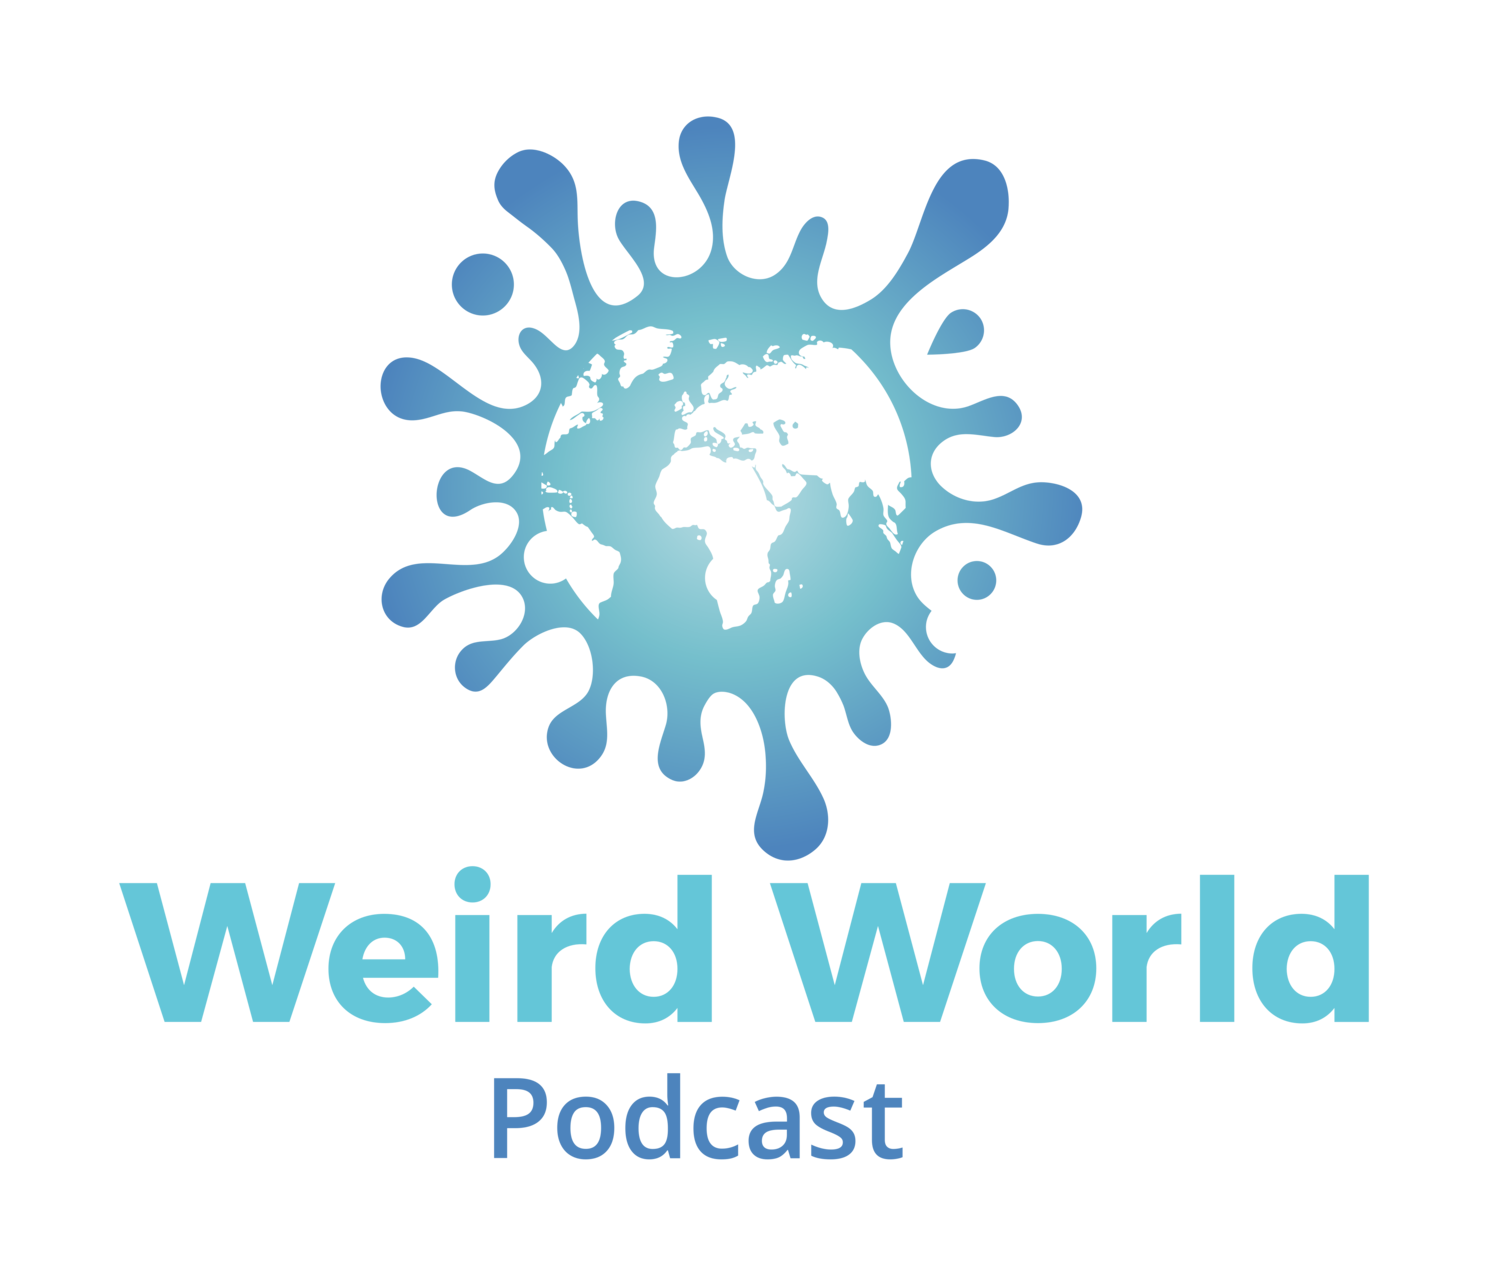 Weird World Podcast